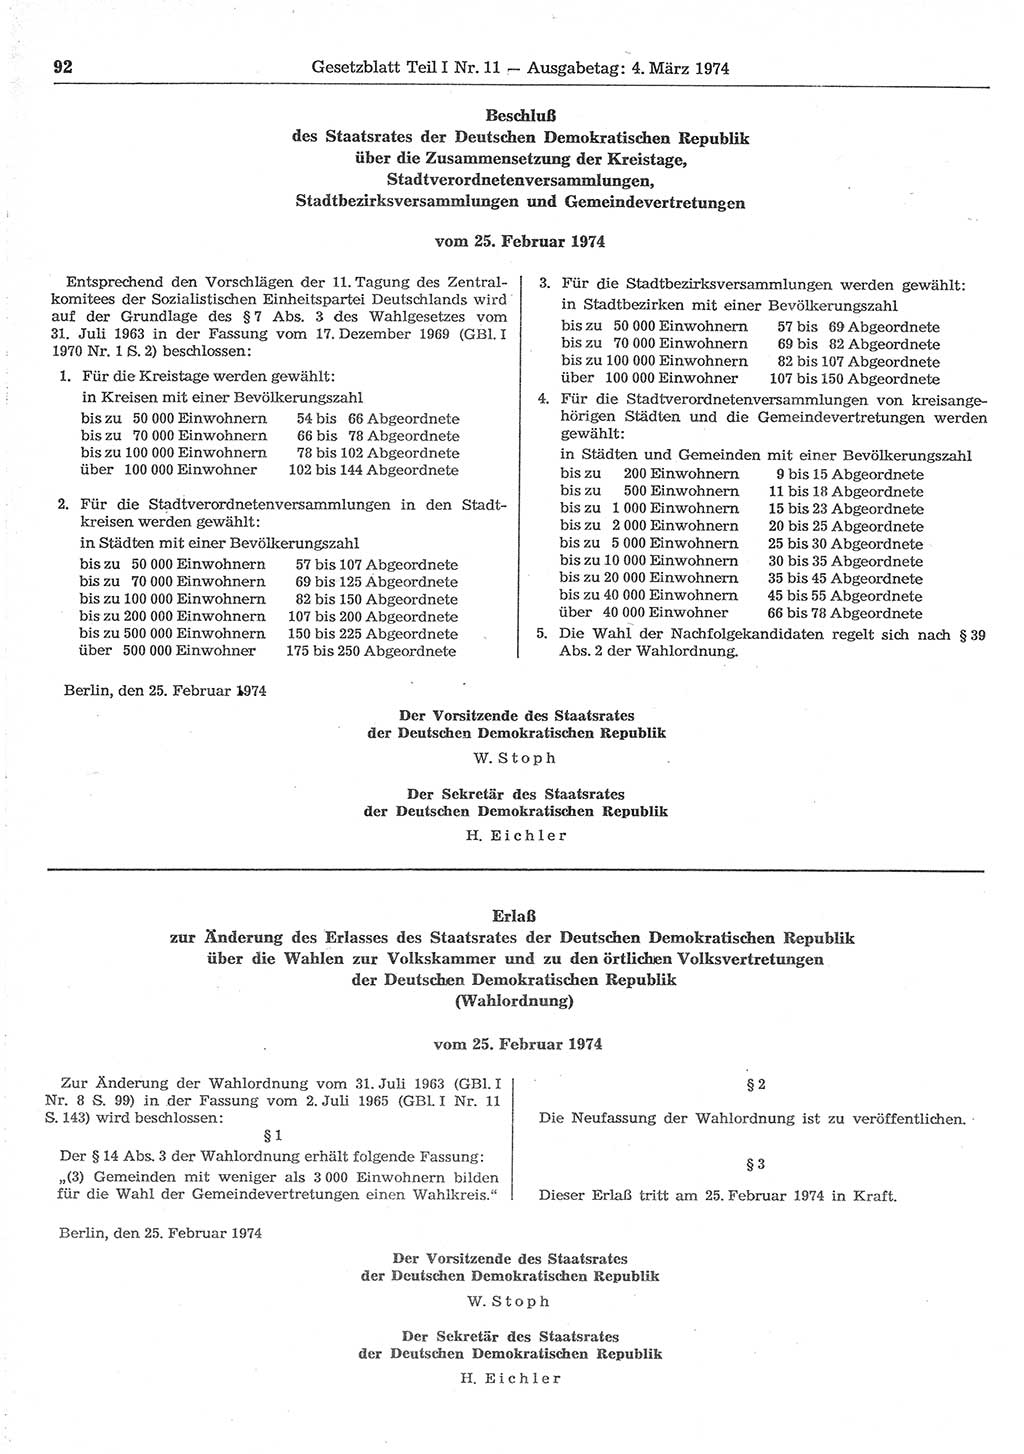 Gesetzblatt (GBl.) der Deutschen Demokratischen Republik (DDR) Teil Ⅰ 1974, Seite 92 (GBl. DDR Ⅰ 1974, S. 92)